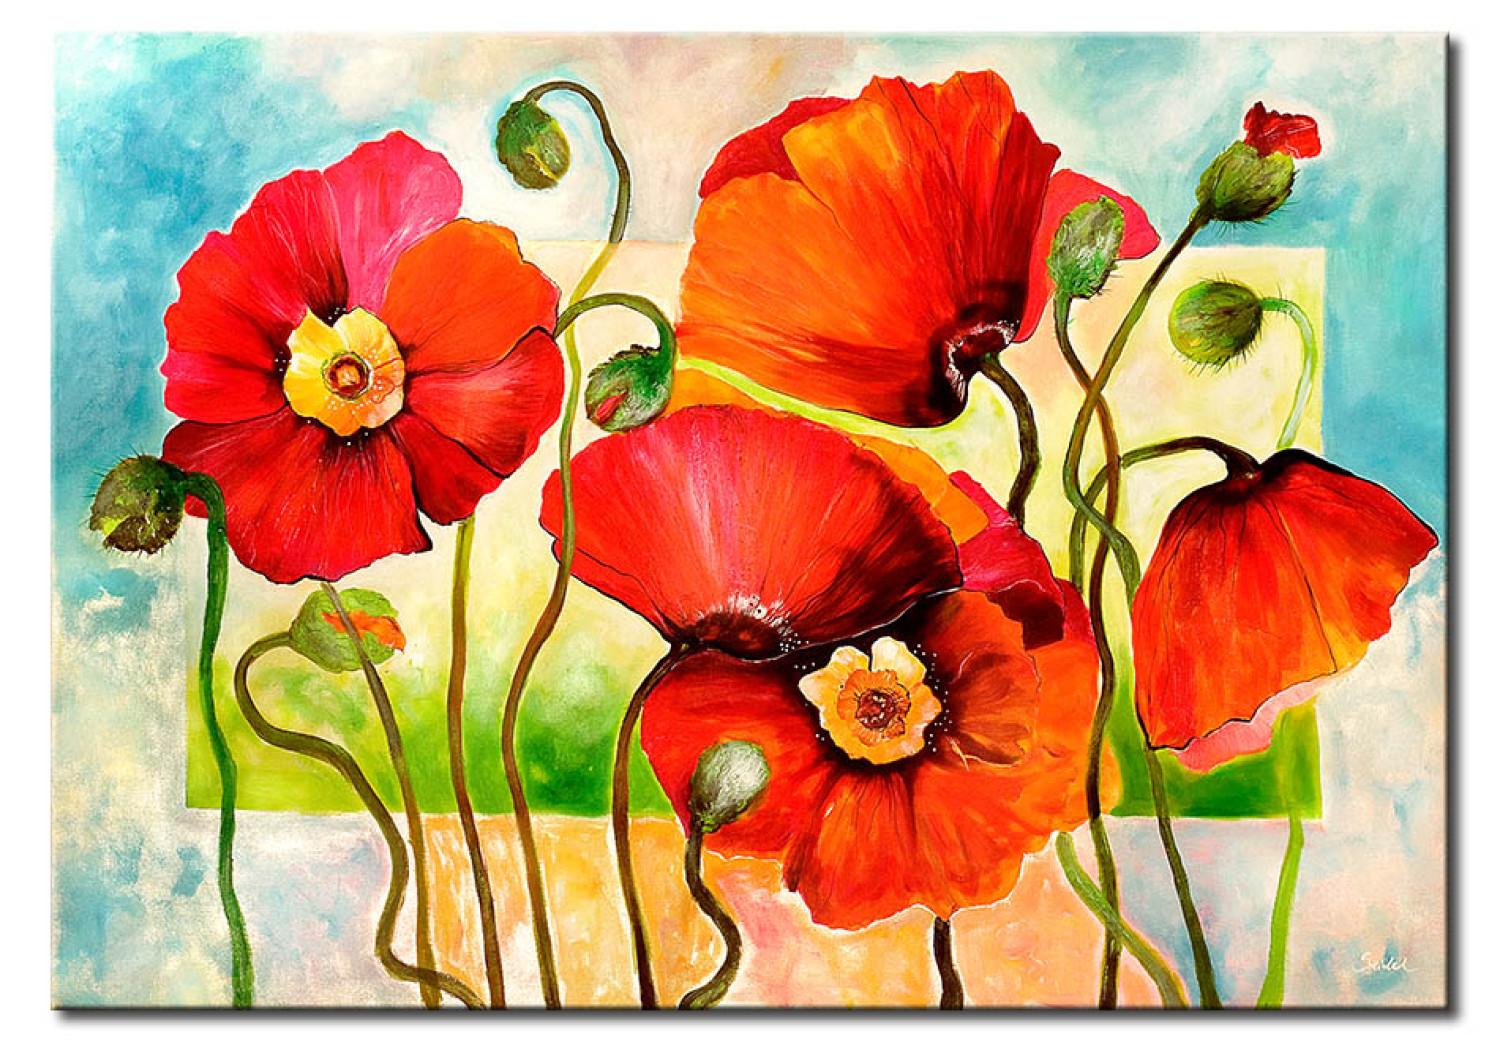 Cuadro Alegres amapolas rojas en flor (1 pieza) - colorido motivo floral